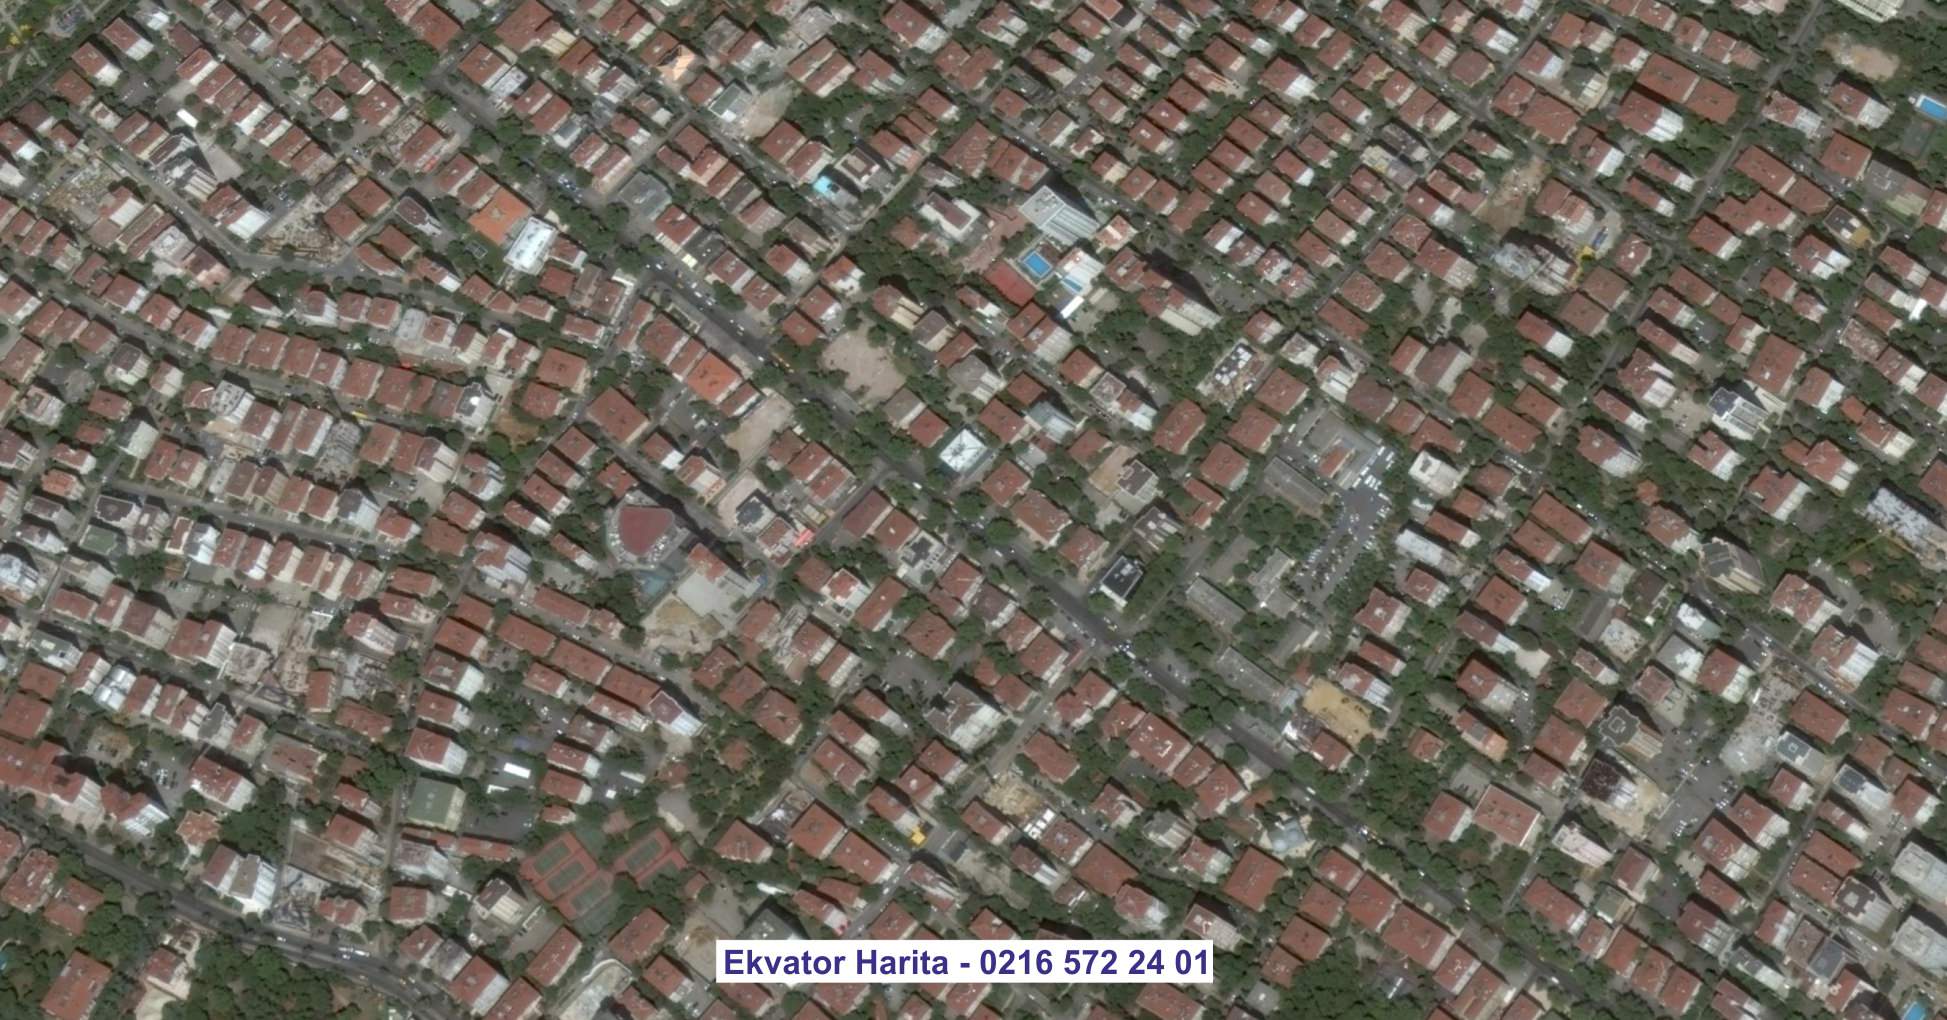 Afyon Uydu Görüntüsü Örnek Fotoğrafı